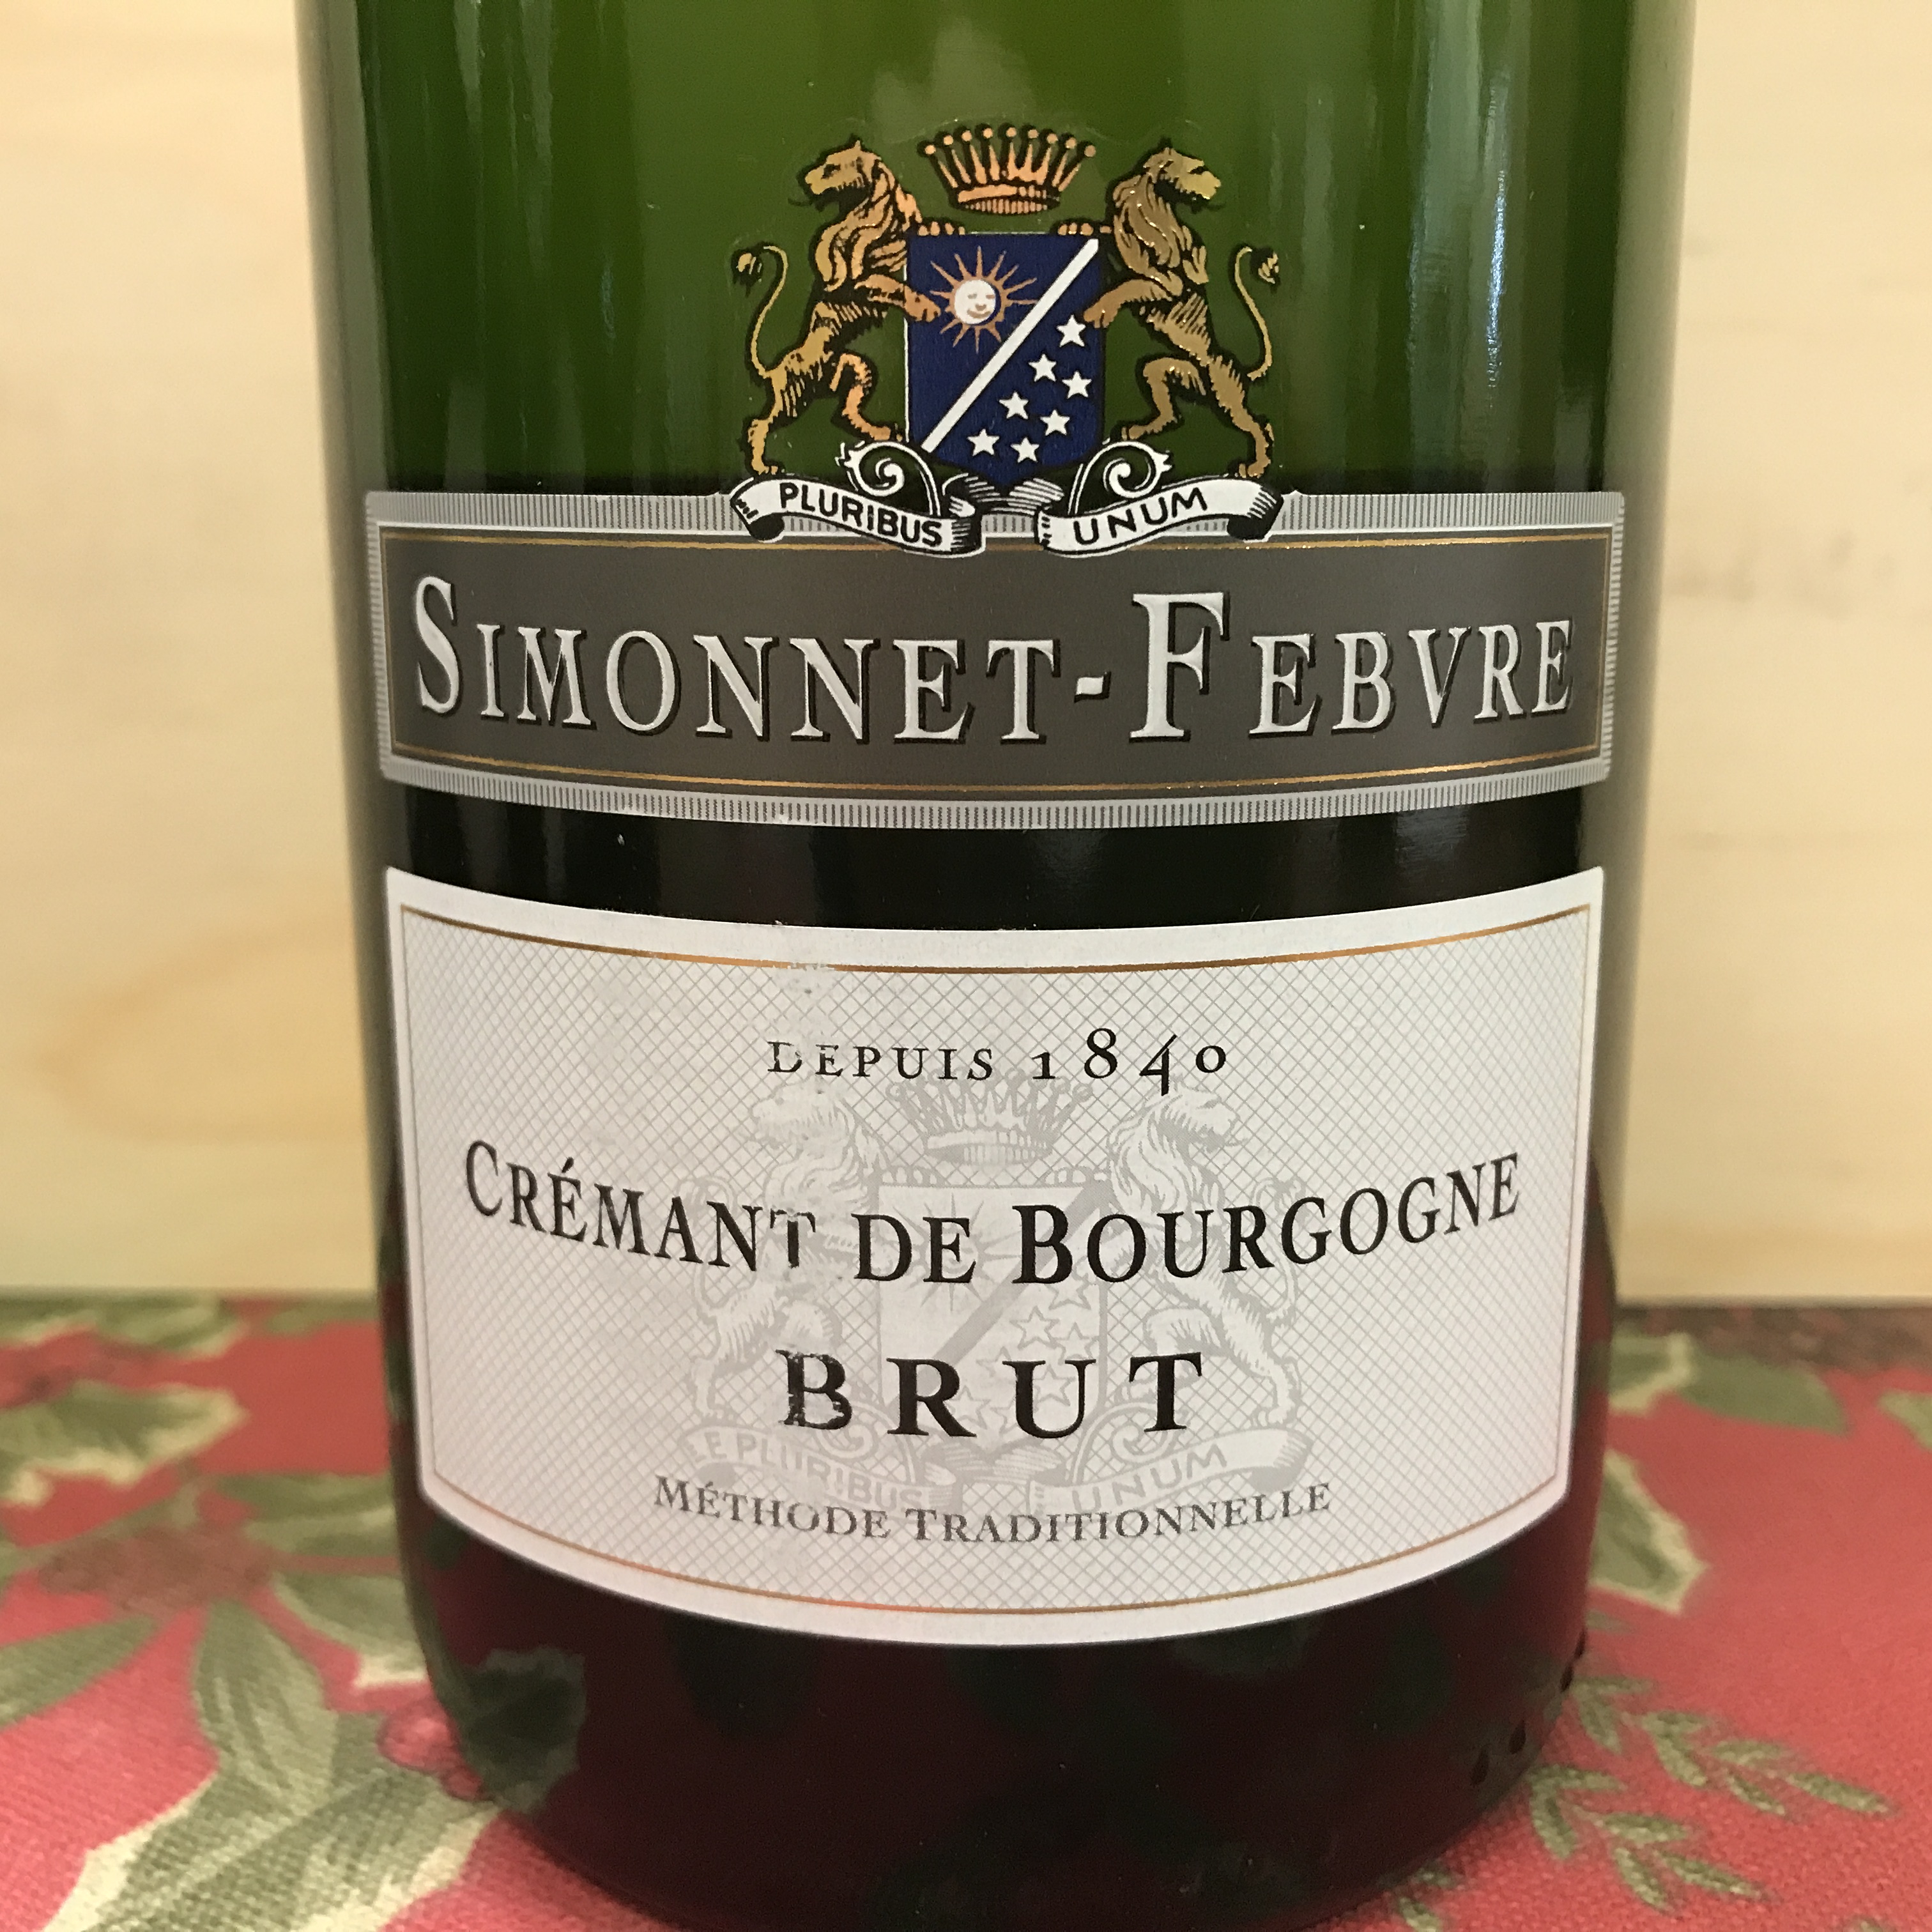 Simonnet-Febvre Cremant de Bourgogne Brut NV